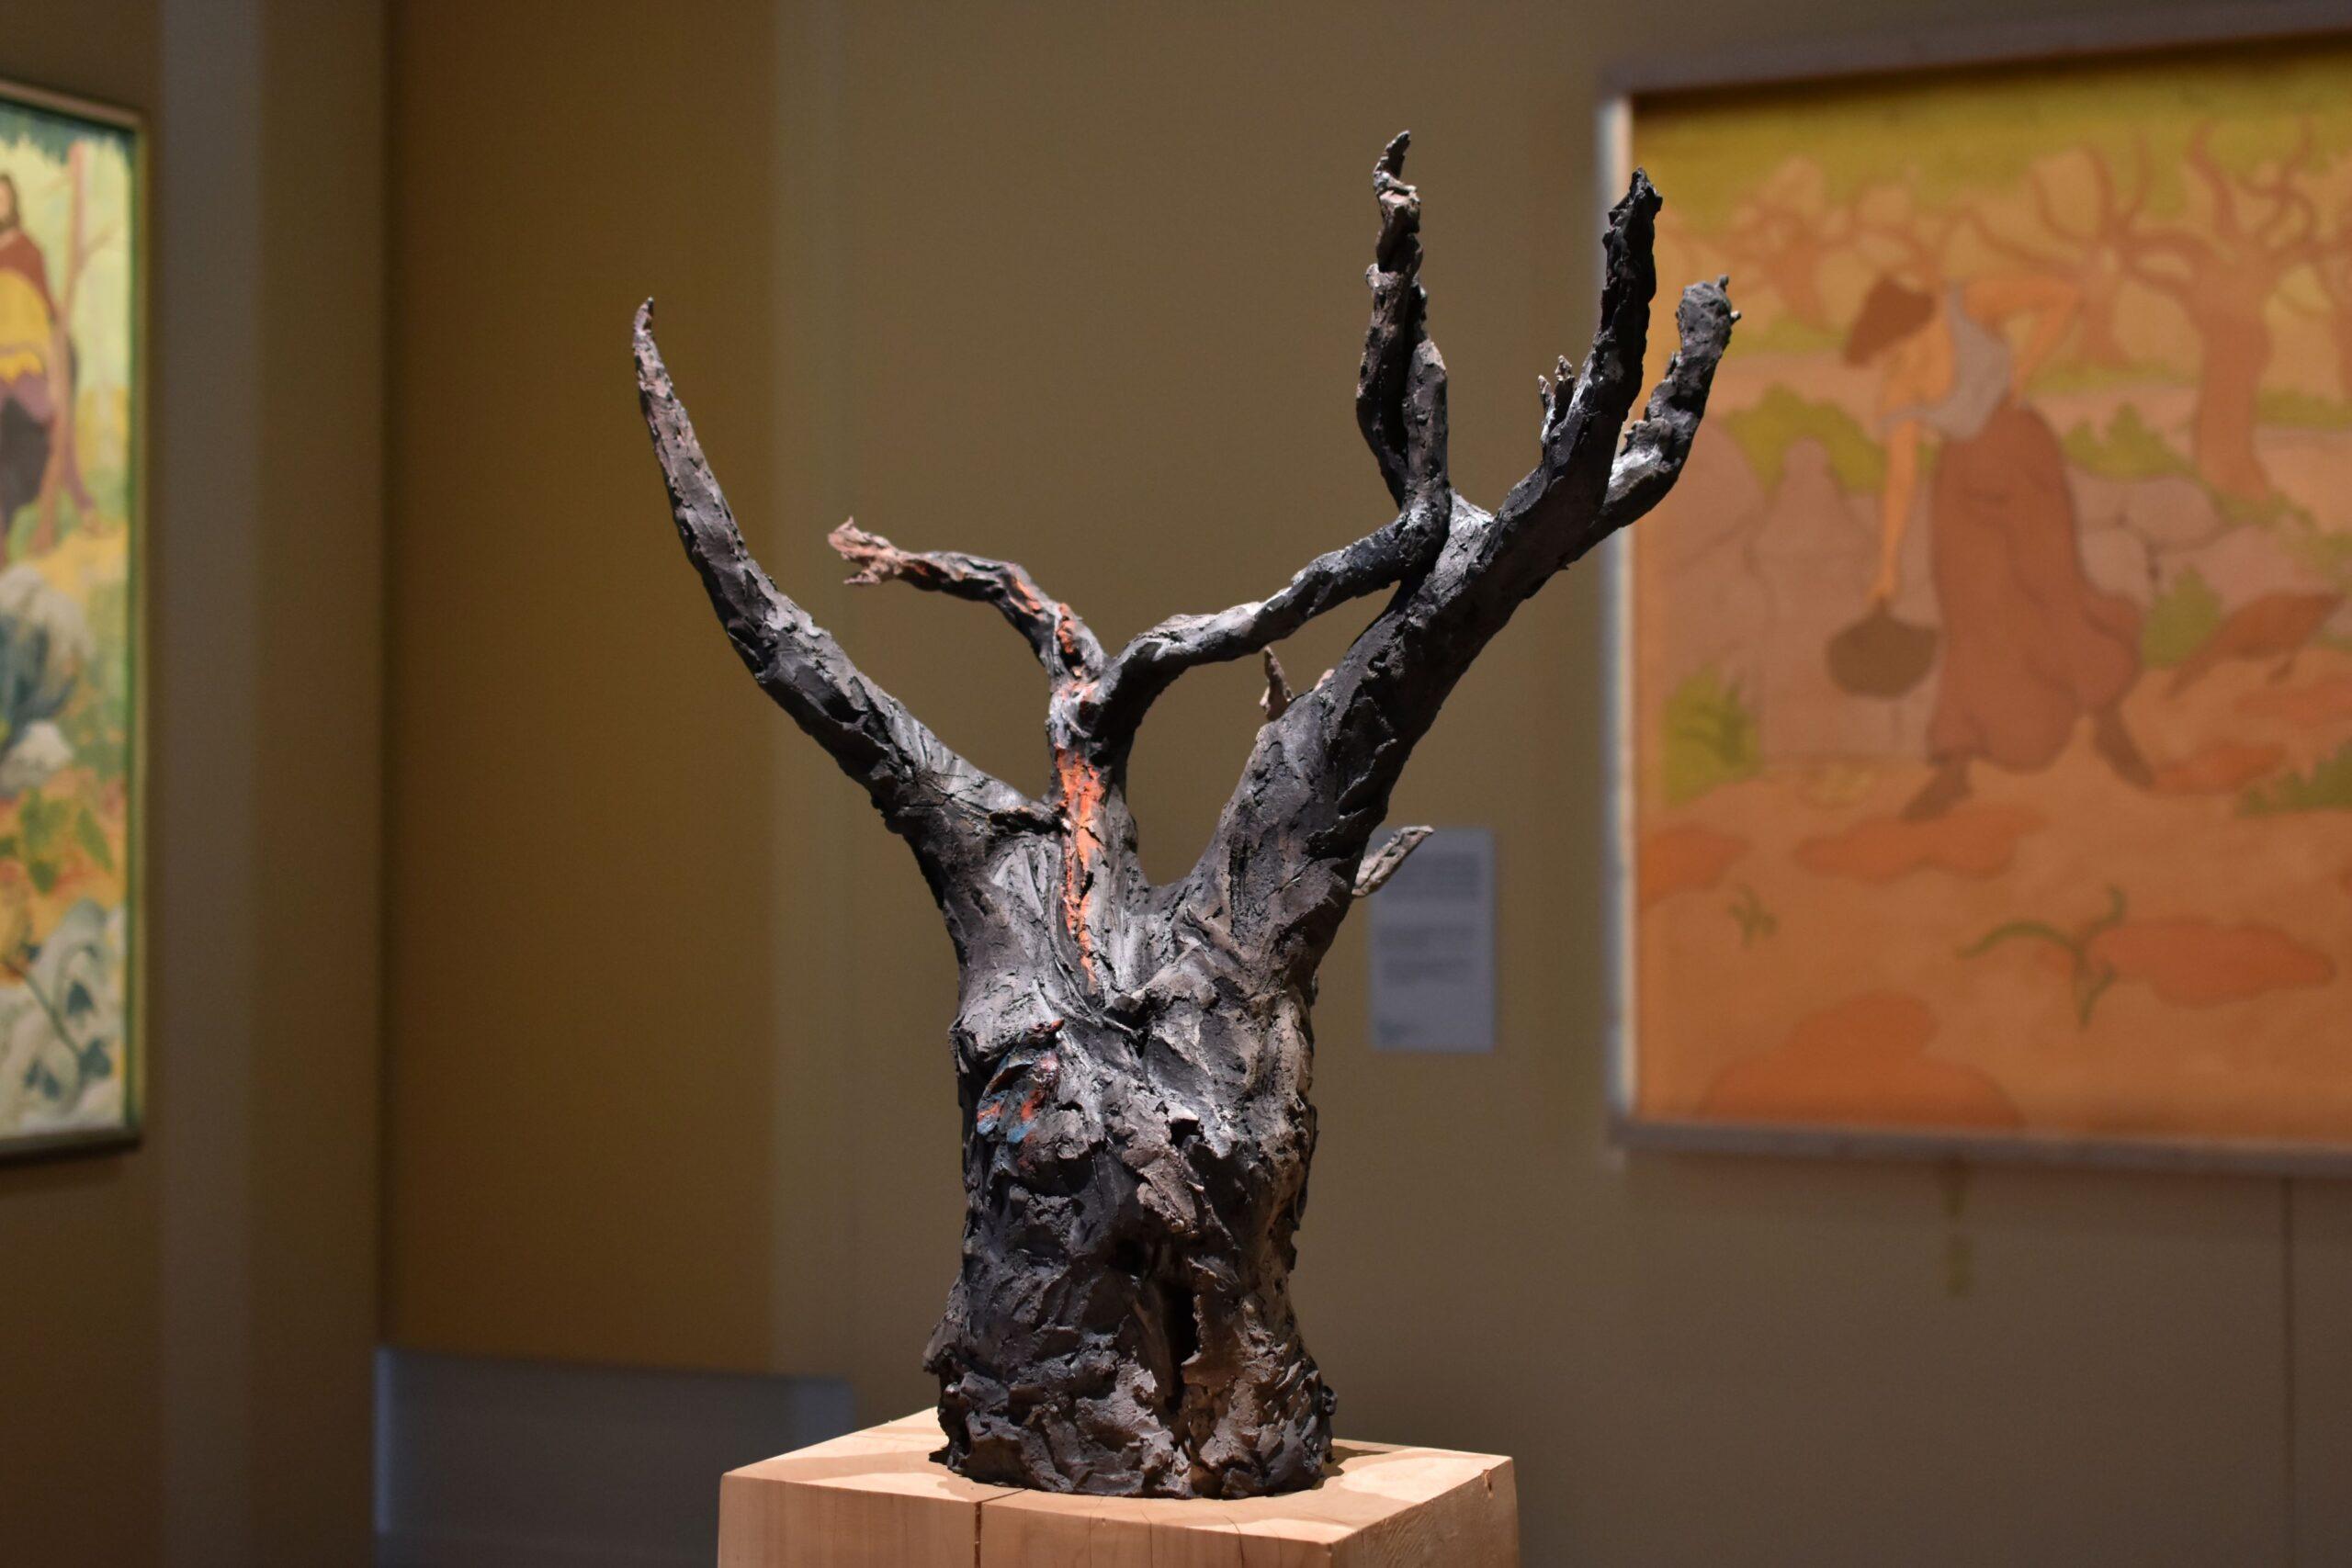 World-tree IV est une sculpture unique en grès cuit et pigments de l'artiste contemporaine française Cécile Raynal, dont les dimensions sont de 90 × 70 × 55 cm (35.4 × 27.6 × 21.7 in). 

Avec l'utilisation de Branch pour représenter des arbres ou